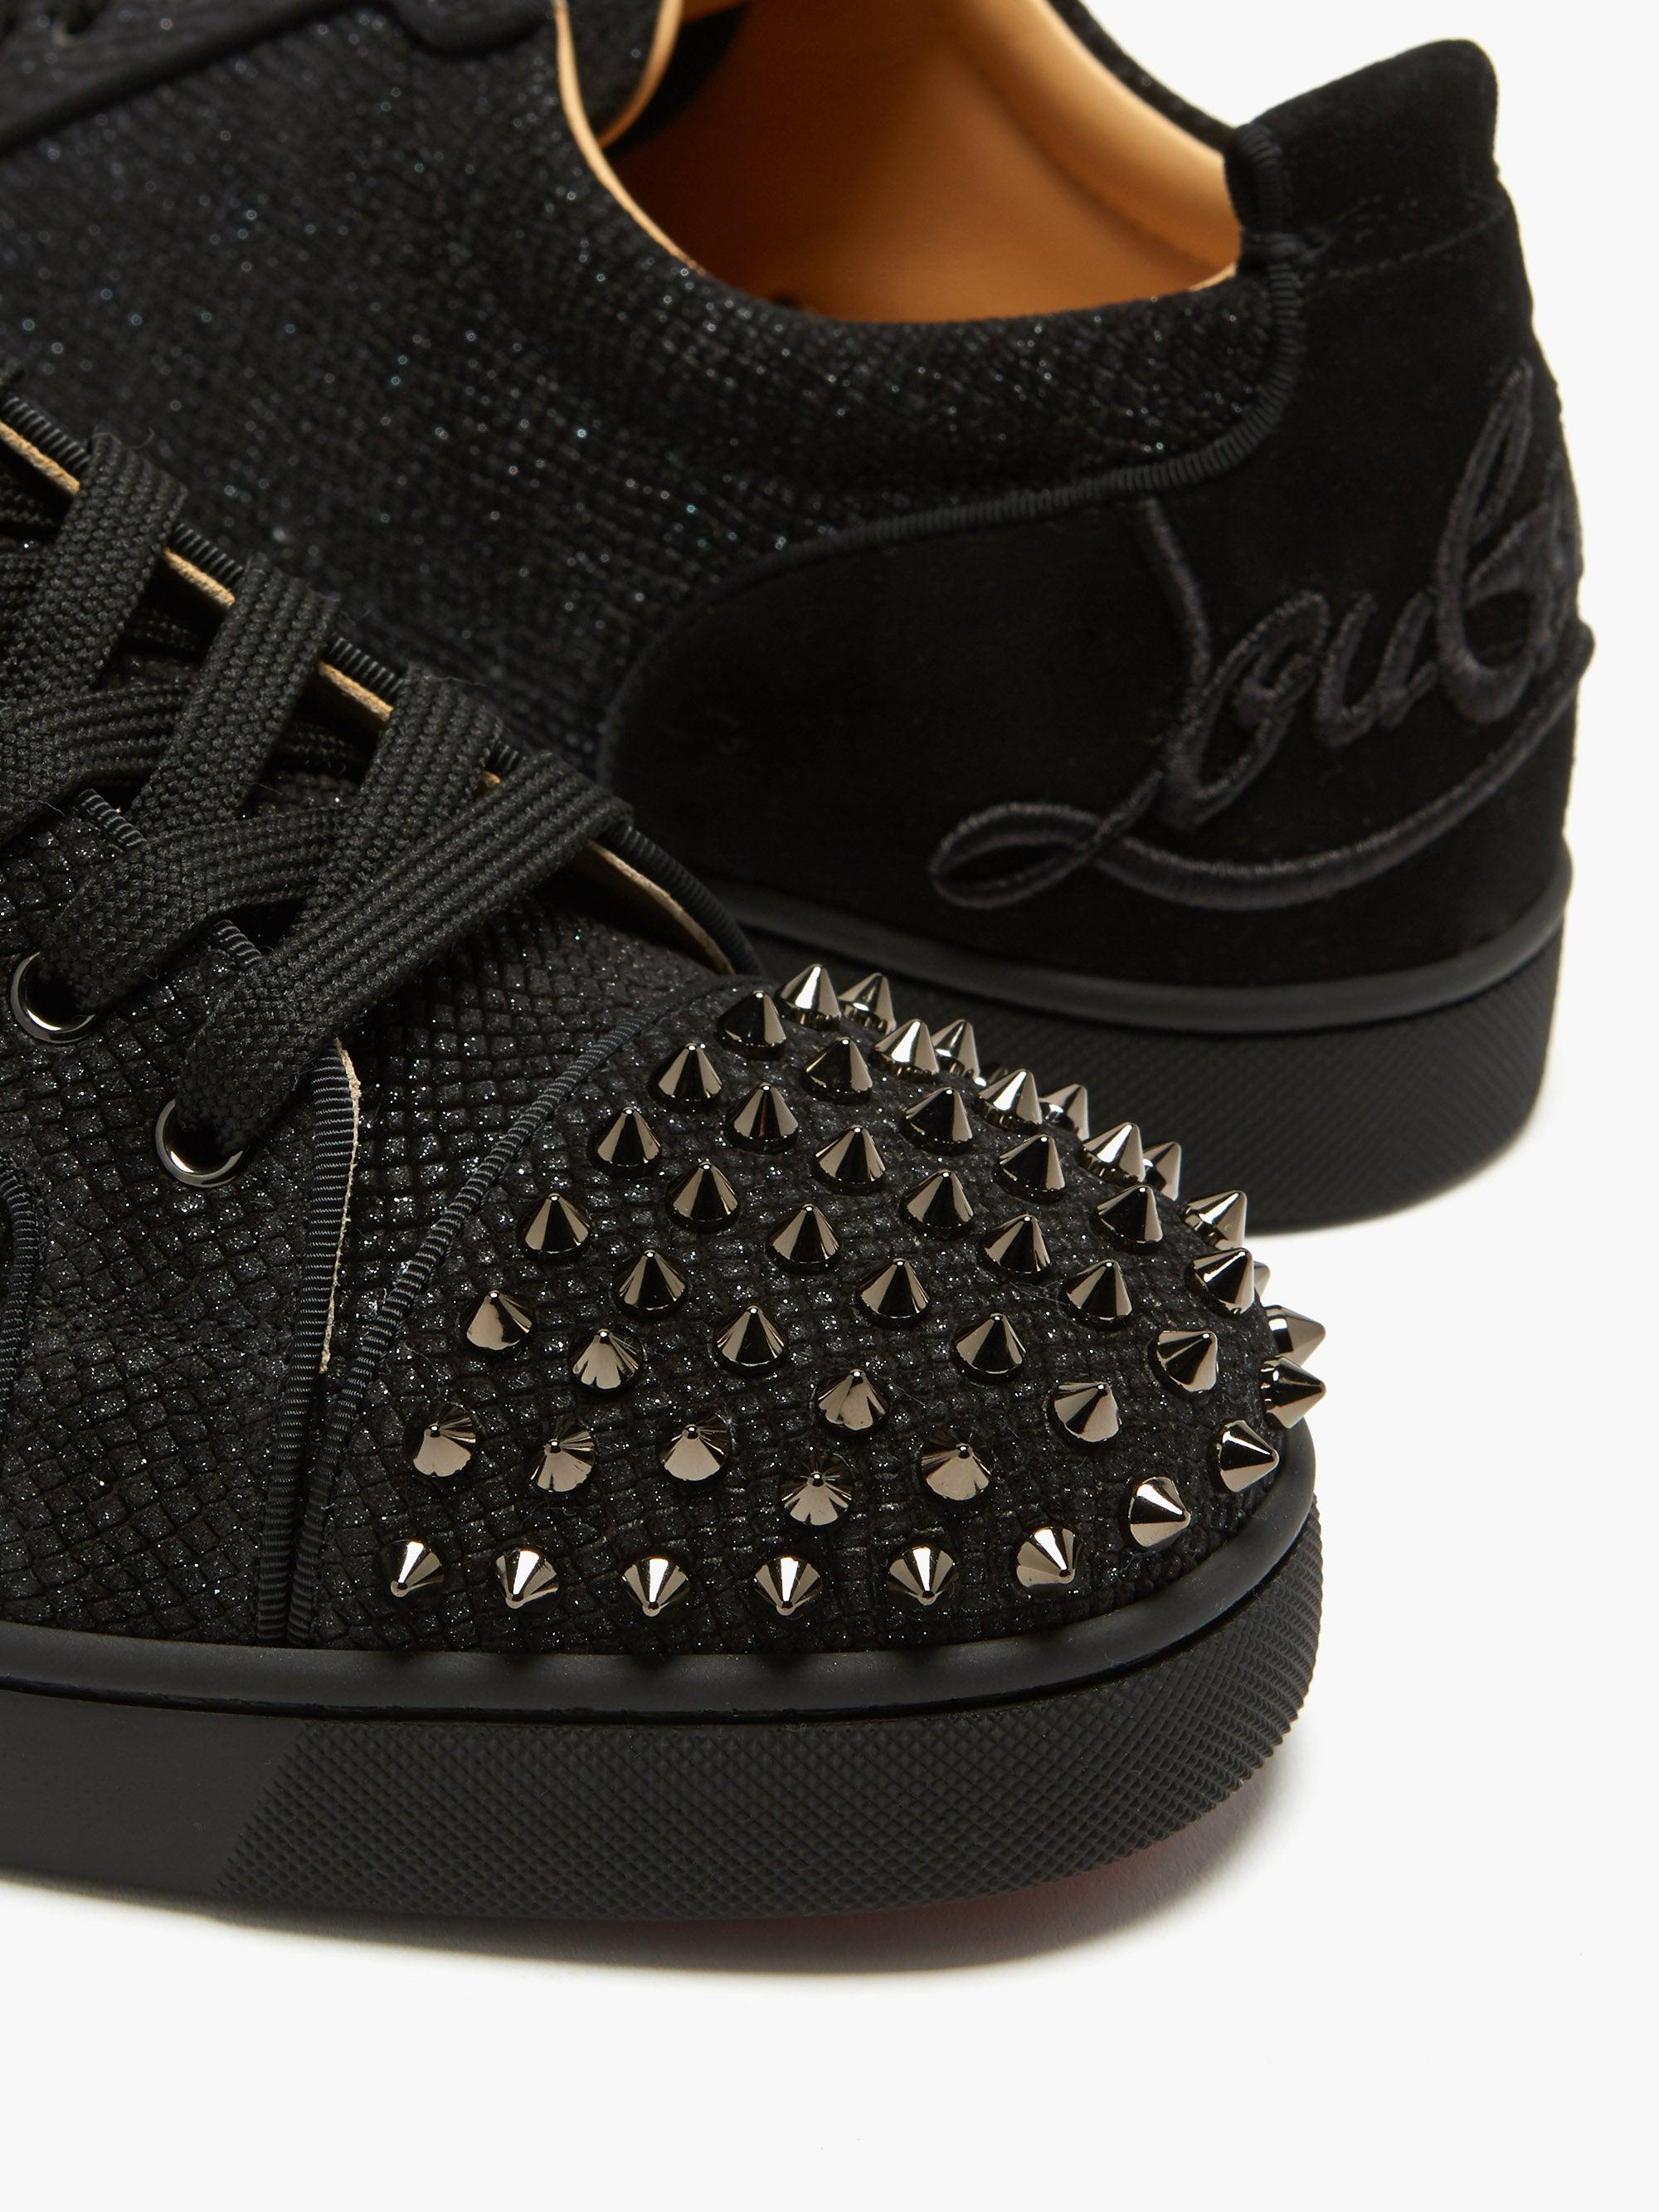 louis vuitton black spike shoes